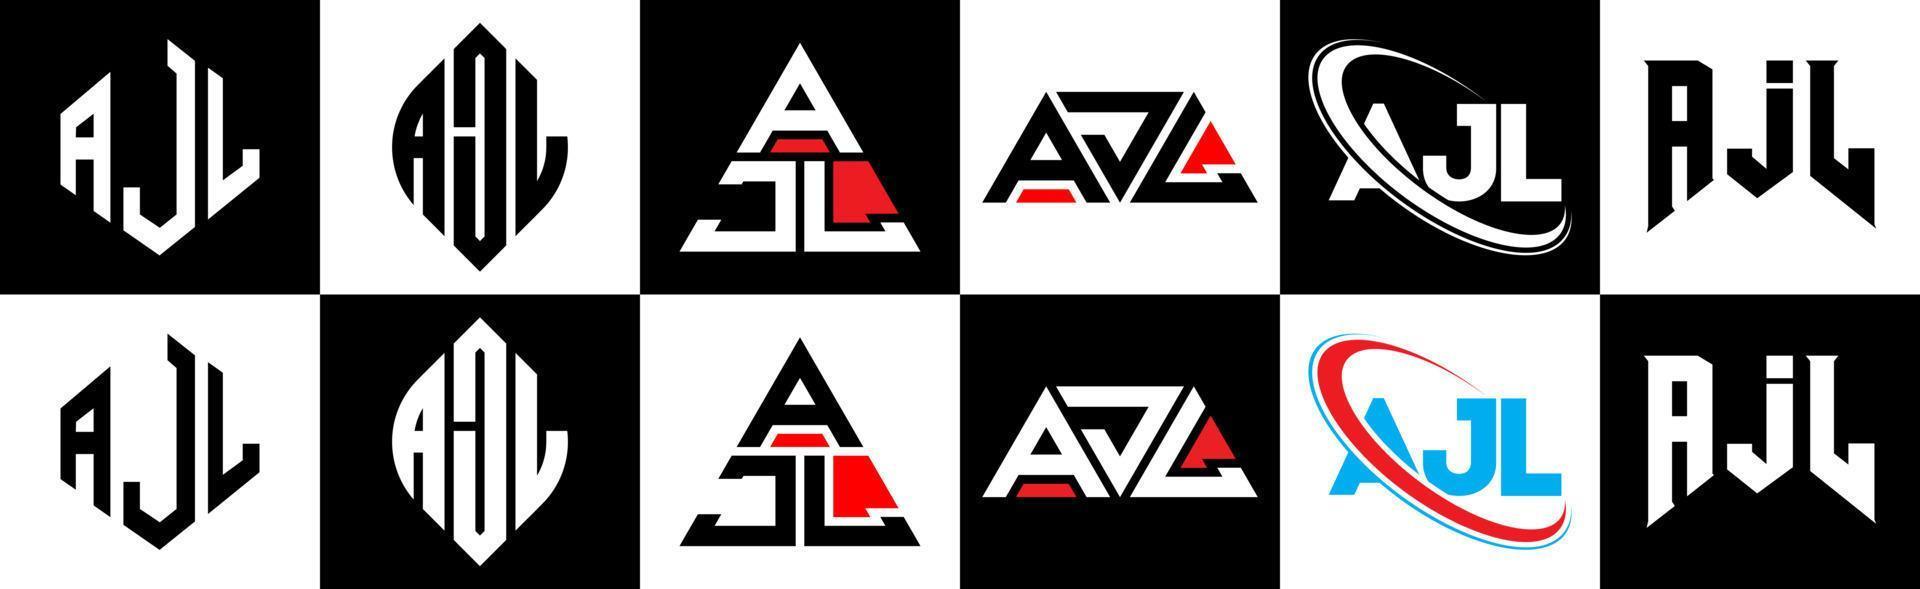 ajl-Buchstaben-Logo-Design in sechs Stilen. ajl polygon, kreis, dreieck, hexagon, flacher und einfacher stil mit schwarz-weißem buchstabenlogo in einer zeichenfläche. Ajl minimalistisches und klassisches Logo vektor